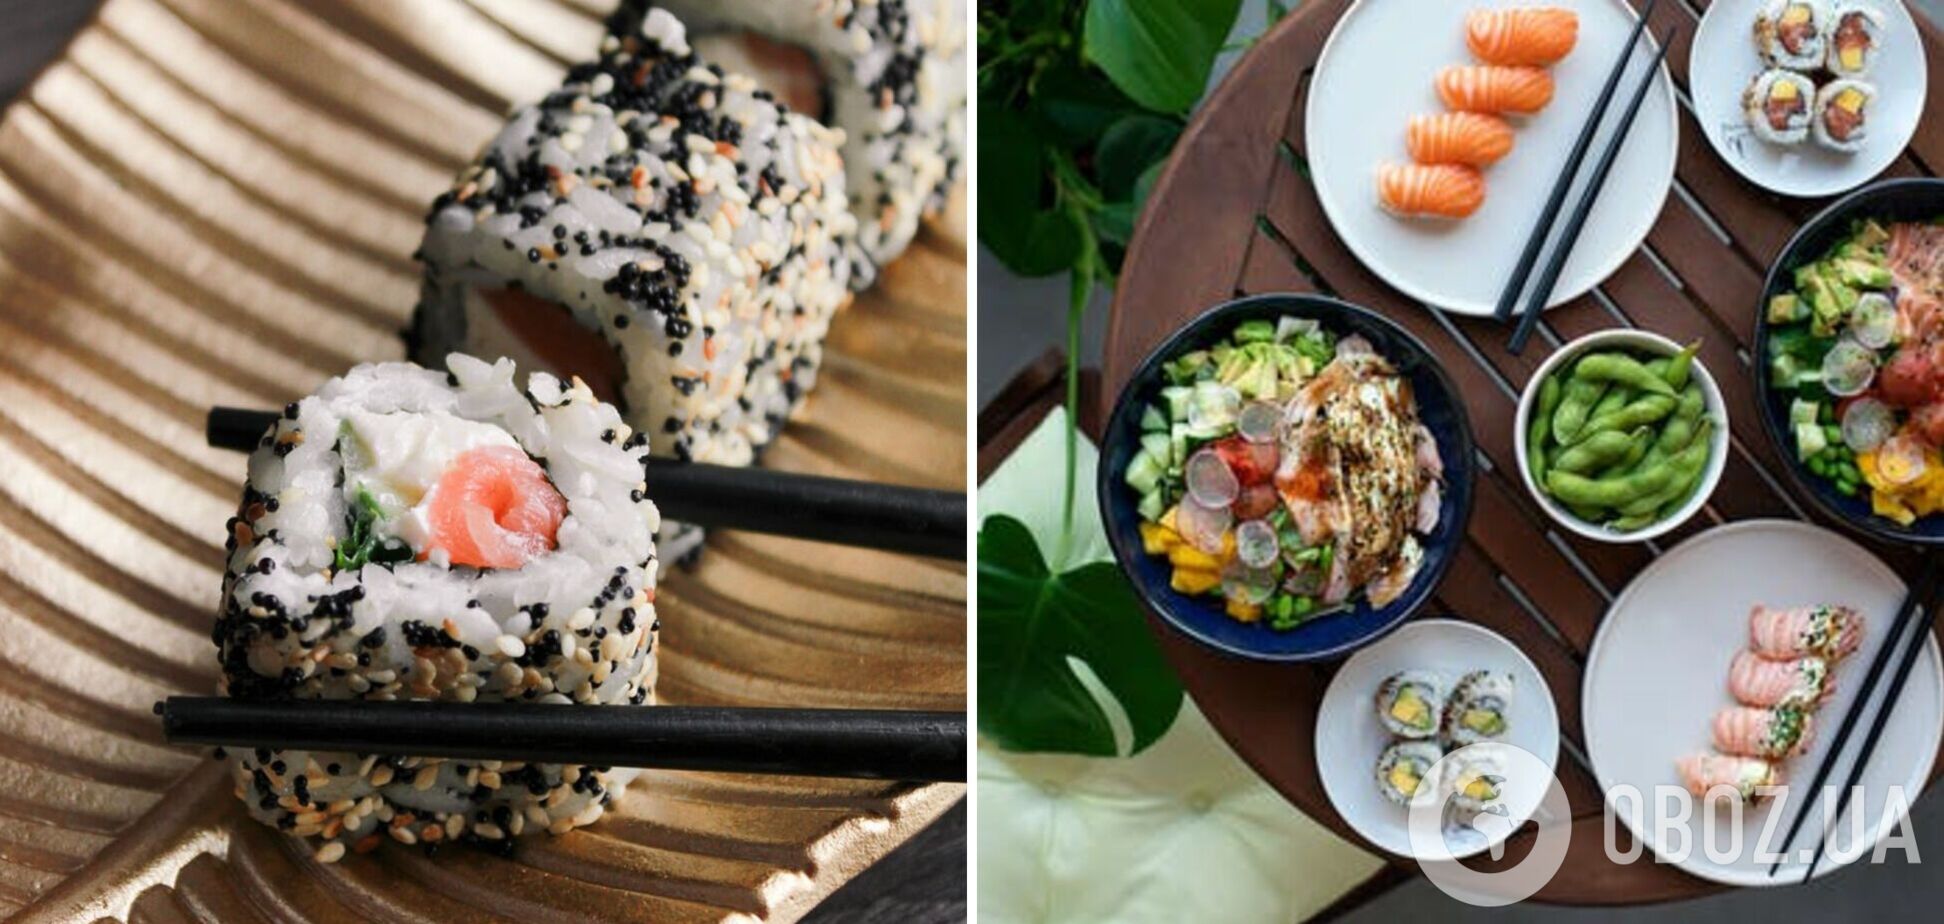 Украина – вторая страна в мире по популярности суши после Японии: рейтинг